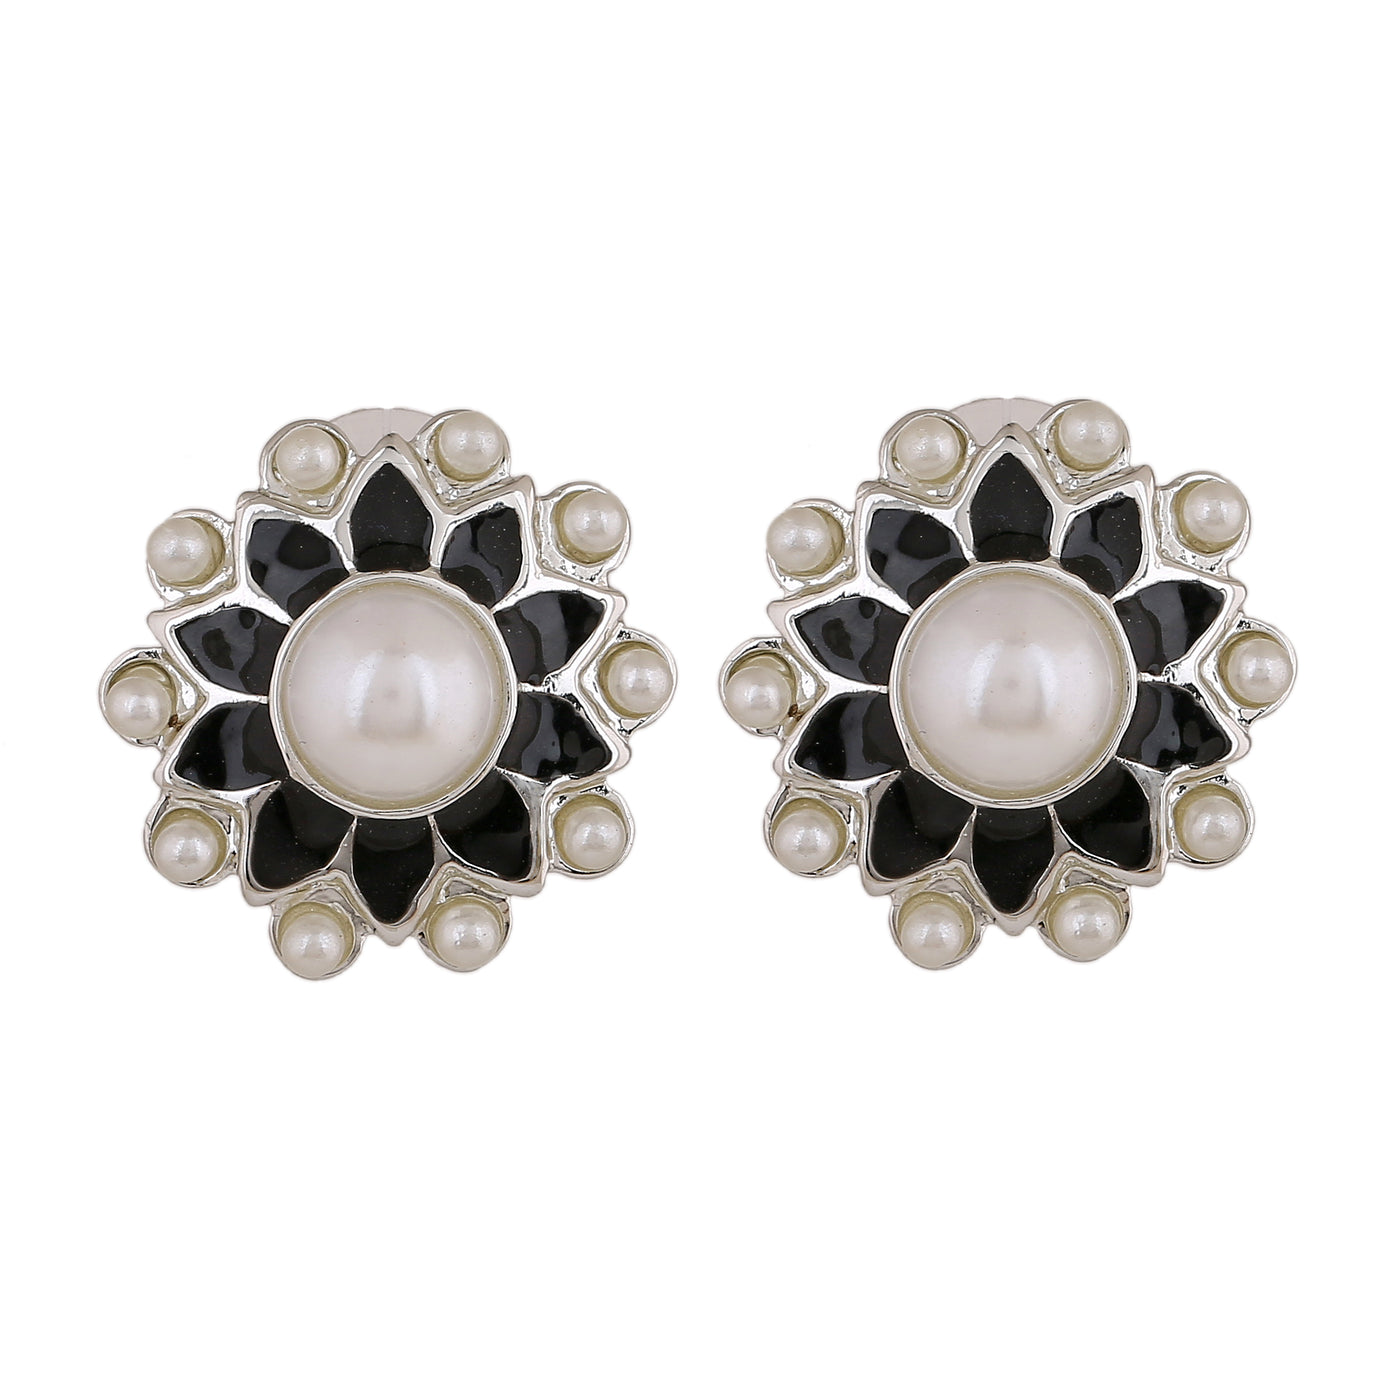 Estele Rhodium Plated Elegant Meenakari Pearl Stud Earrings with Black Enamel for Women